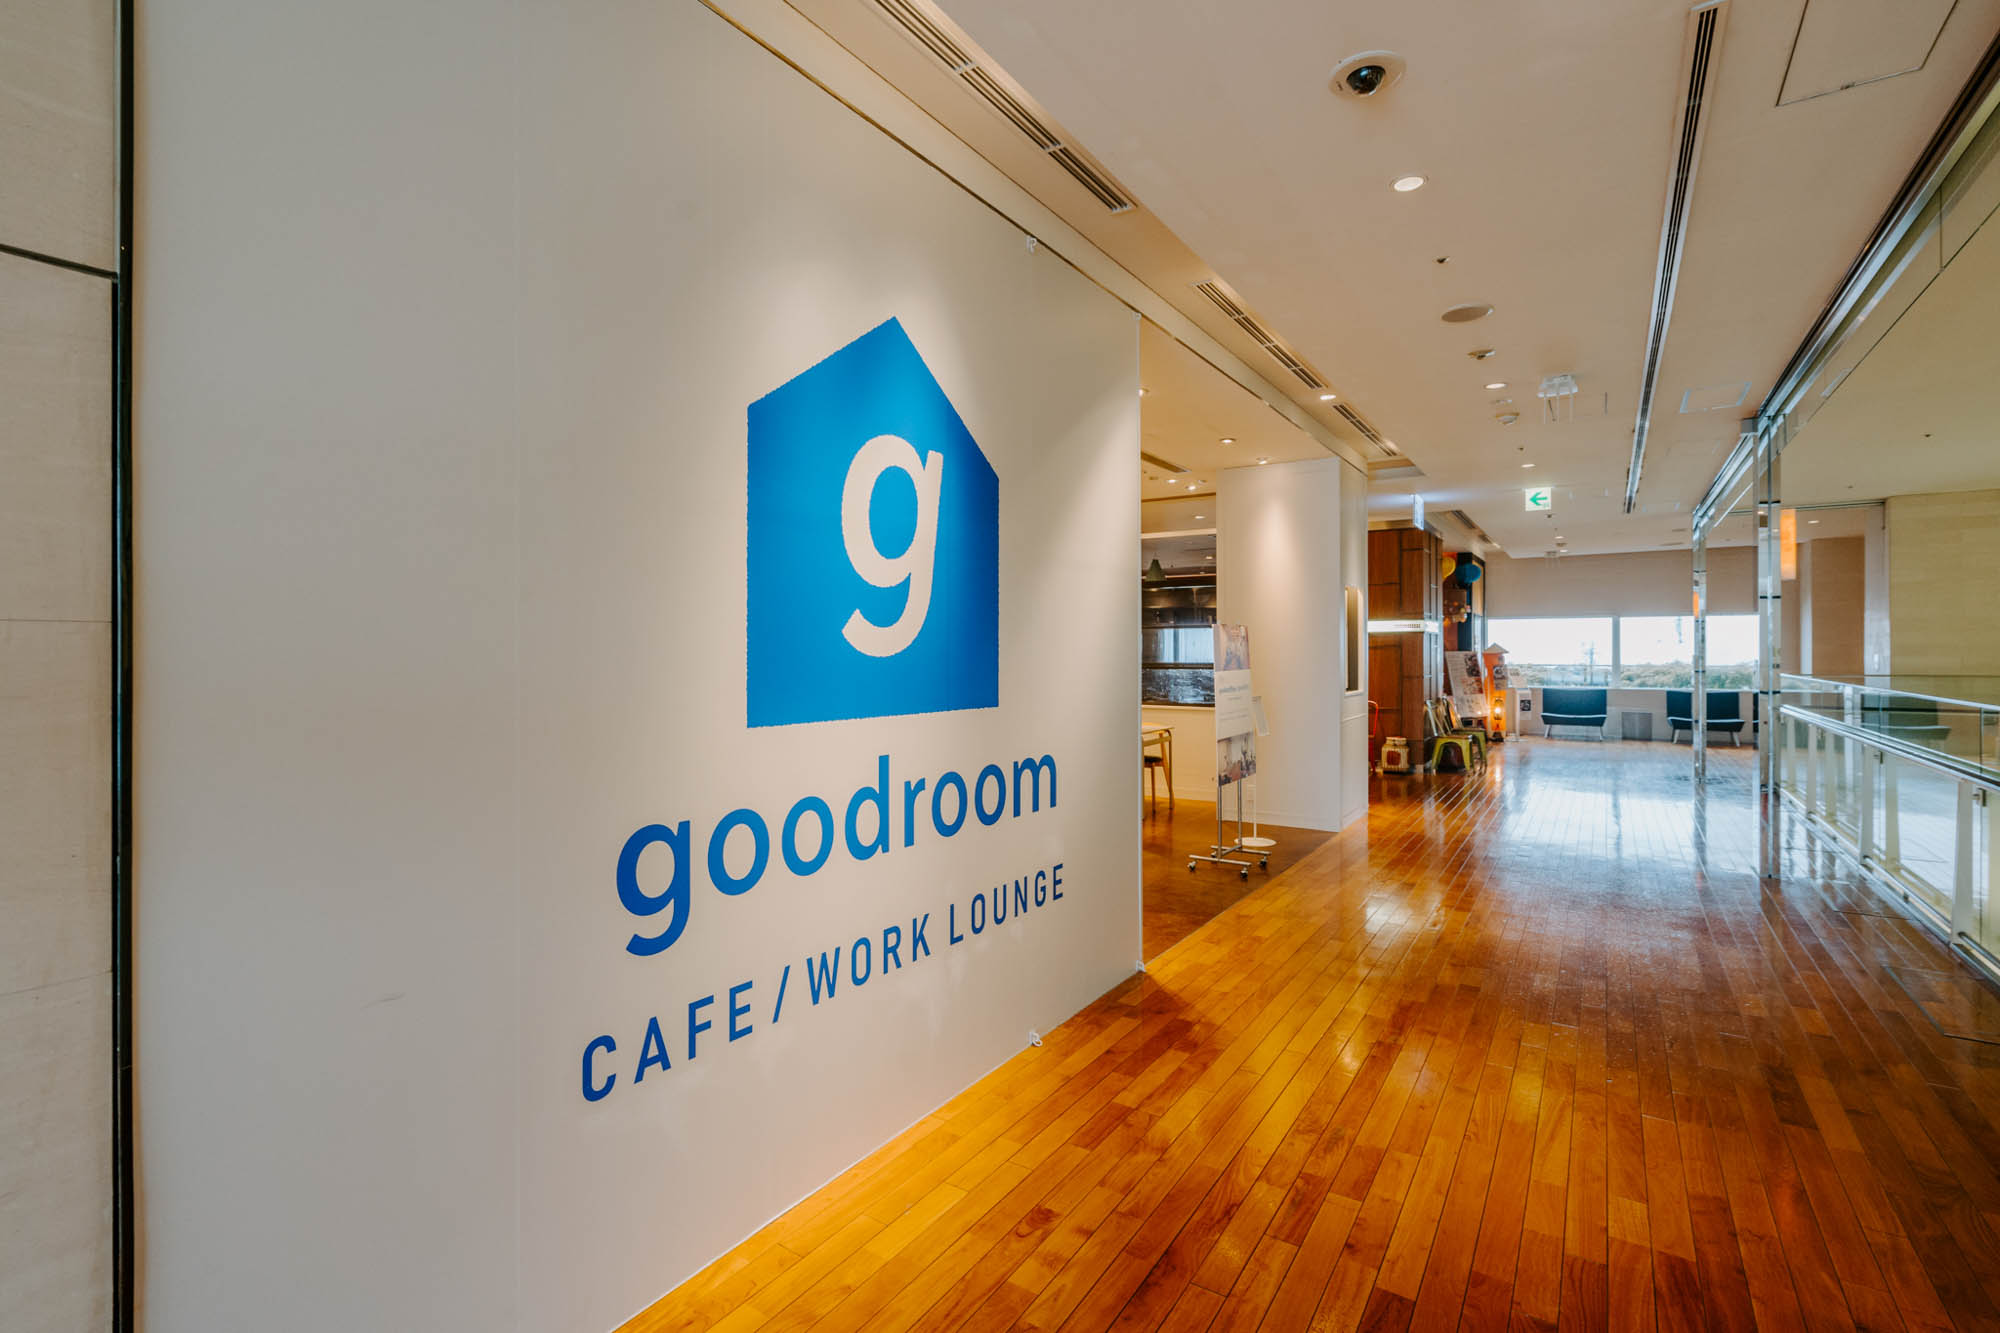 goodroom 初！カフェを併設するワークラウンジ「goodoffice 二子玉川」がオープンしました